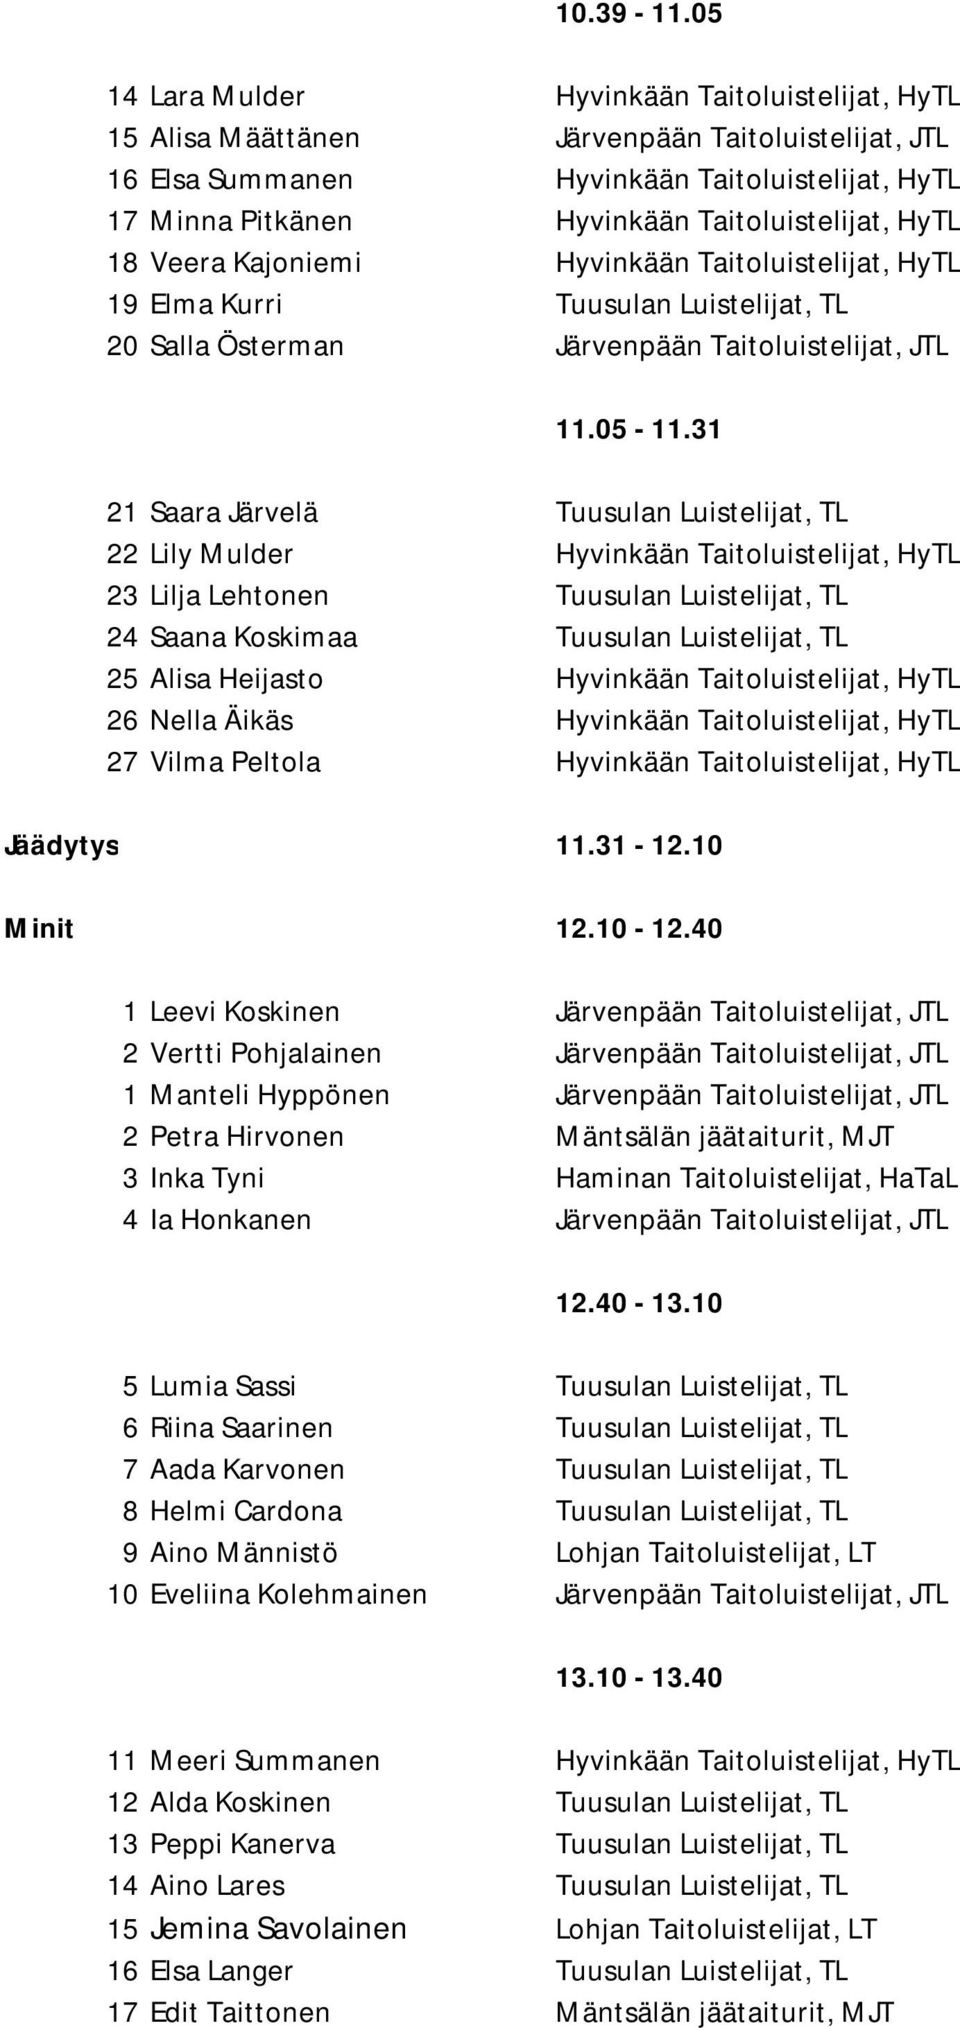 HyTL 18 Veera Kajoniemi Hyvinkään Taitoluistelijat, HyTL 19 Elma Kurri Tuusulan Luistelijat, TL 20 Salla Österman Järvenpään Taitoluistelijat, JTL 11.05-11.